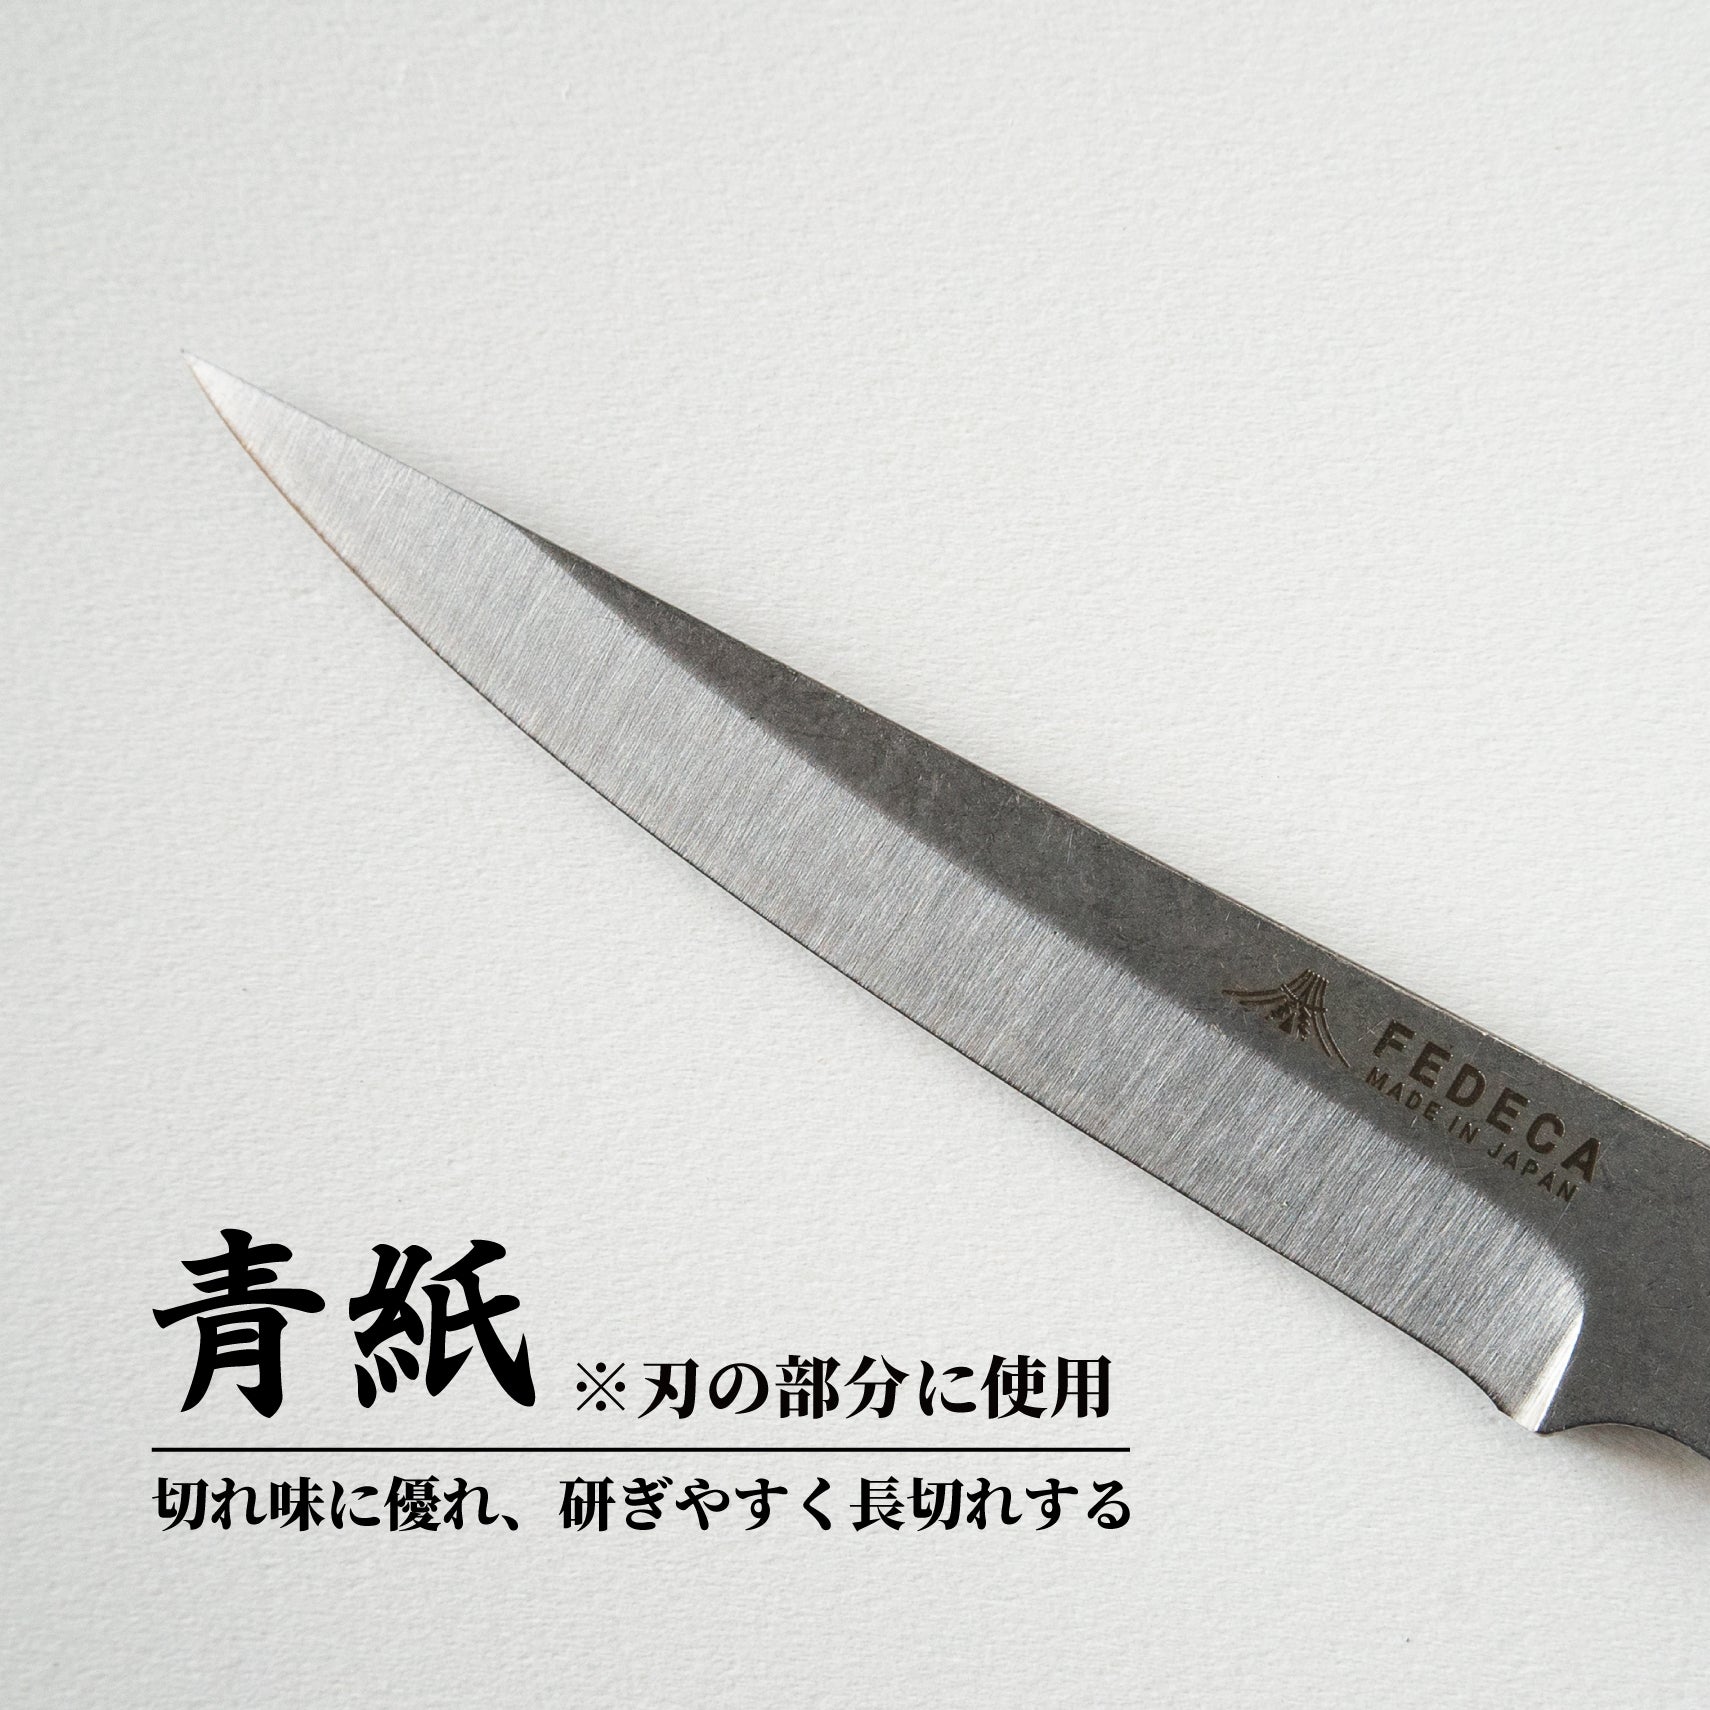 【難易度★★☆】It's my knife KIBORI Standard 5,720円